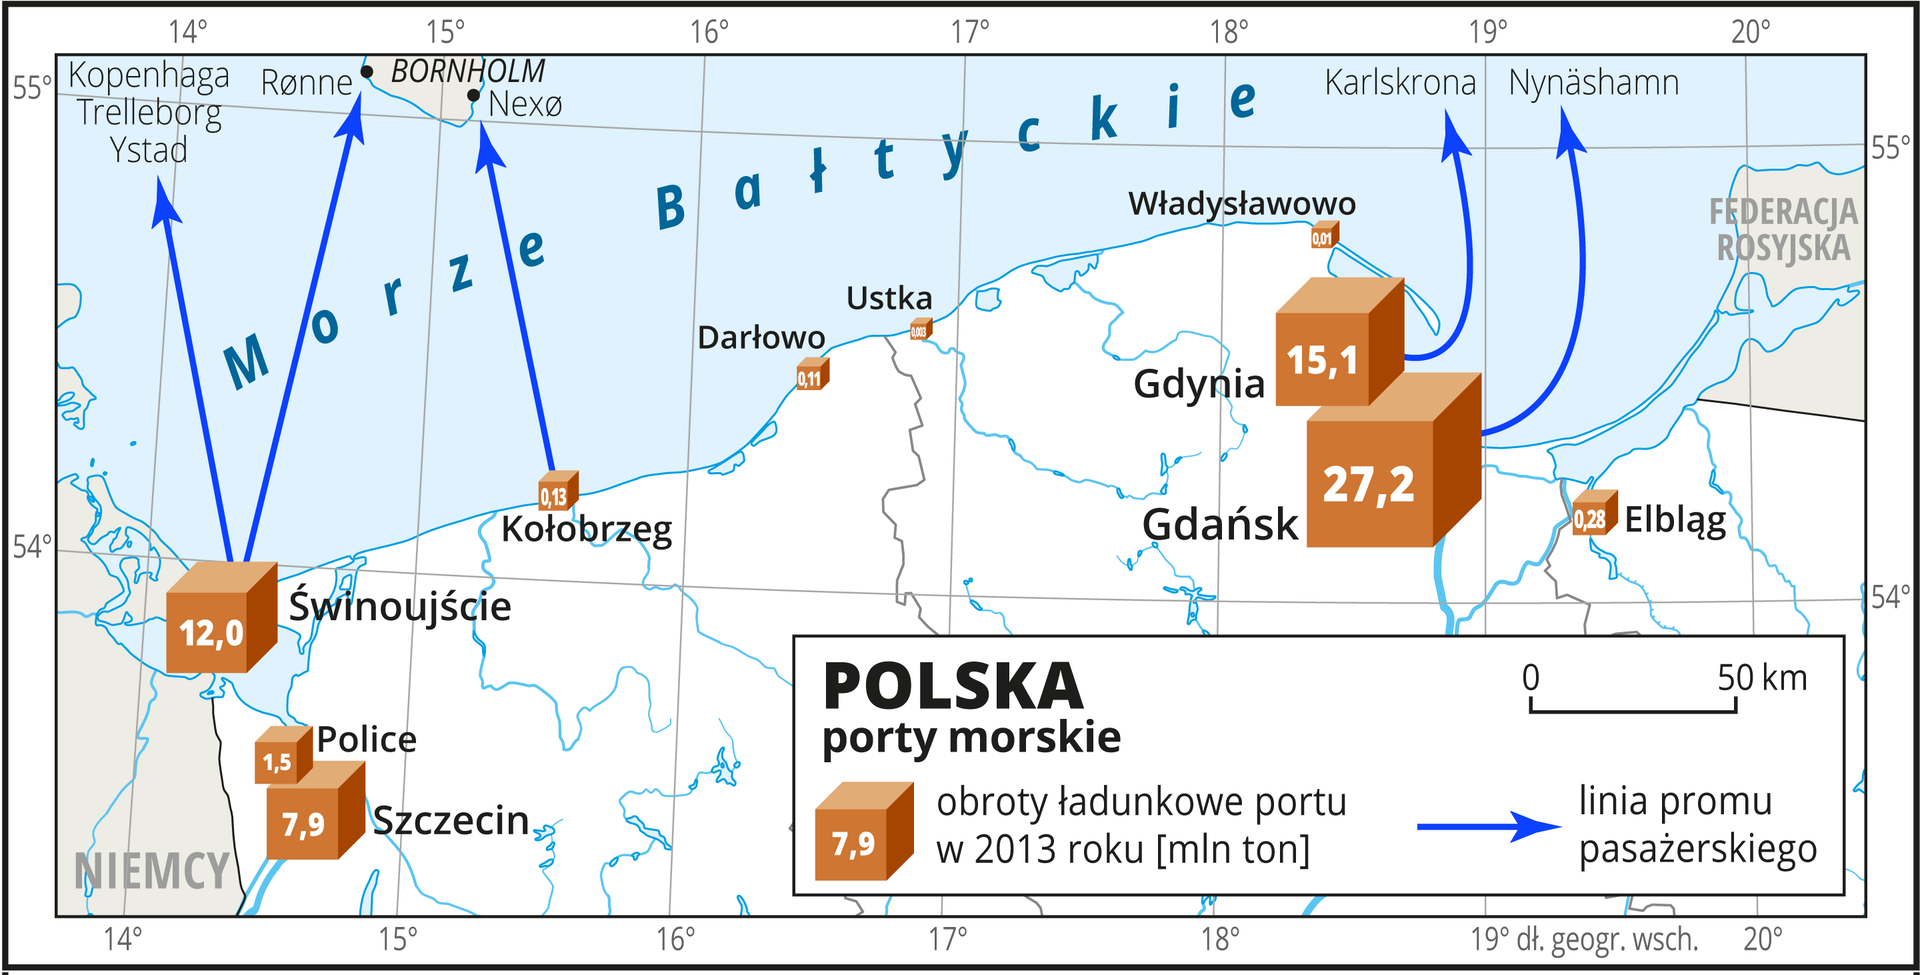 Ilustracja przedstawia mapę północnej części Polski i porty morskie. Na mapie niebieskimi liniami przedstawiono linie promu pasażerskiego ze Świnoujścia do Ystad, Kopenhagi, Treleborga i Rønne, z Kołobrzegu do Nexø, z Gdyni do Karlskrony i z Gdańska do Nynäshamn. Miasta portowe oznaczono sygnaturą sześcianu, wielkością sześcianu zaznaczono obroty ładunkowe portu w milionach ton w dwa tysiące trzynastym roku. Największy Gdańsk – dwadzieścia siedem milionów ton, Gdynia – piętnaście milionów ton, najmniejsza Ustka – trzy tysiące ton. Mapa pokryta jest równoleżnikami i południkami. Dookoła mapy w białej ramce opisano współrzędne geograficzne co jeden stopień.